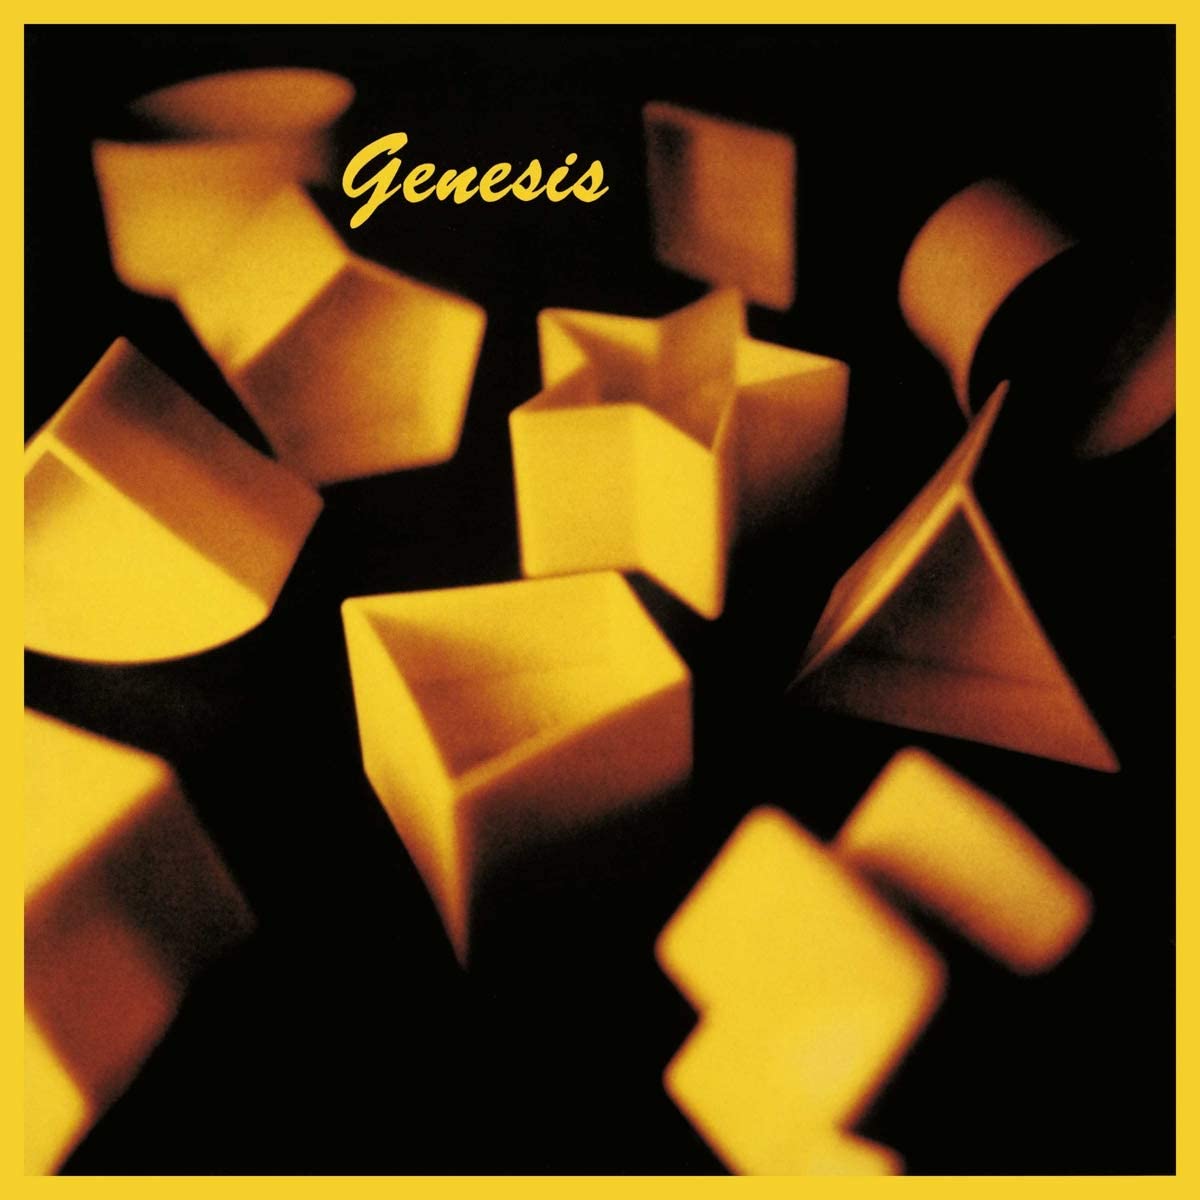 Genesis - Vinyl | Genesis image0